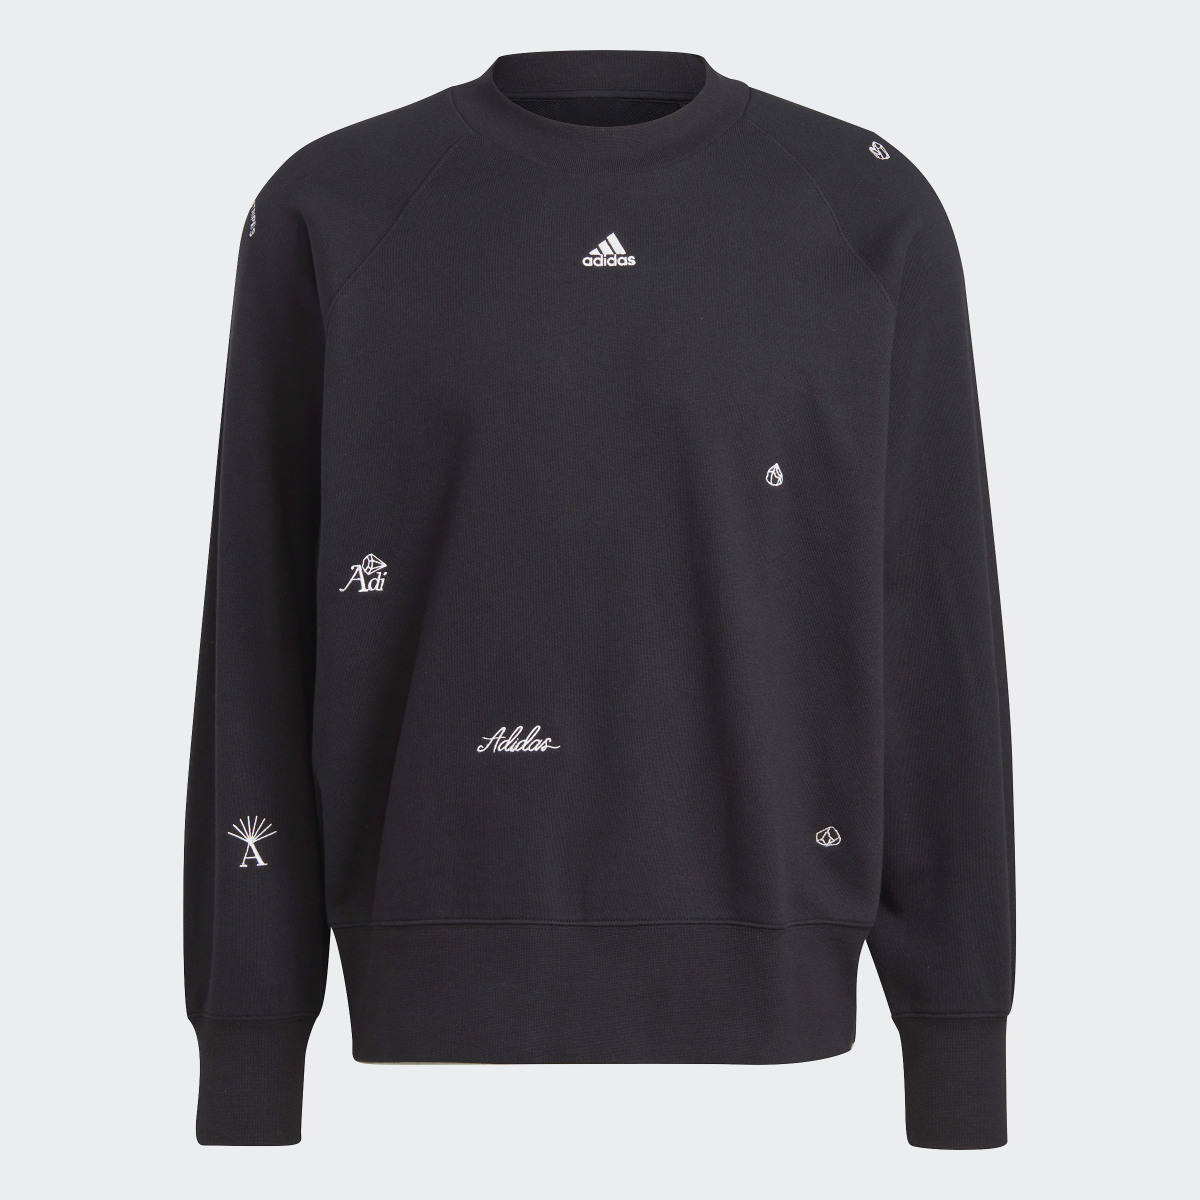 Adidas Sweat-shirt ras-du-cou oversize avec graphismes inspirés de la lithothérapie. 5